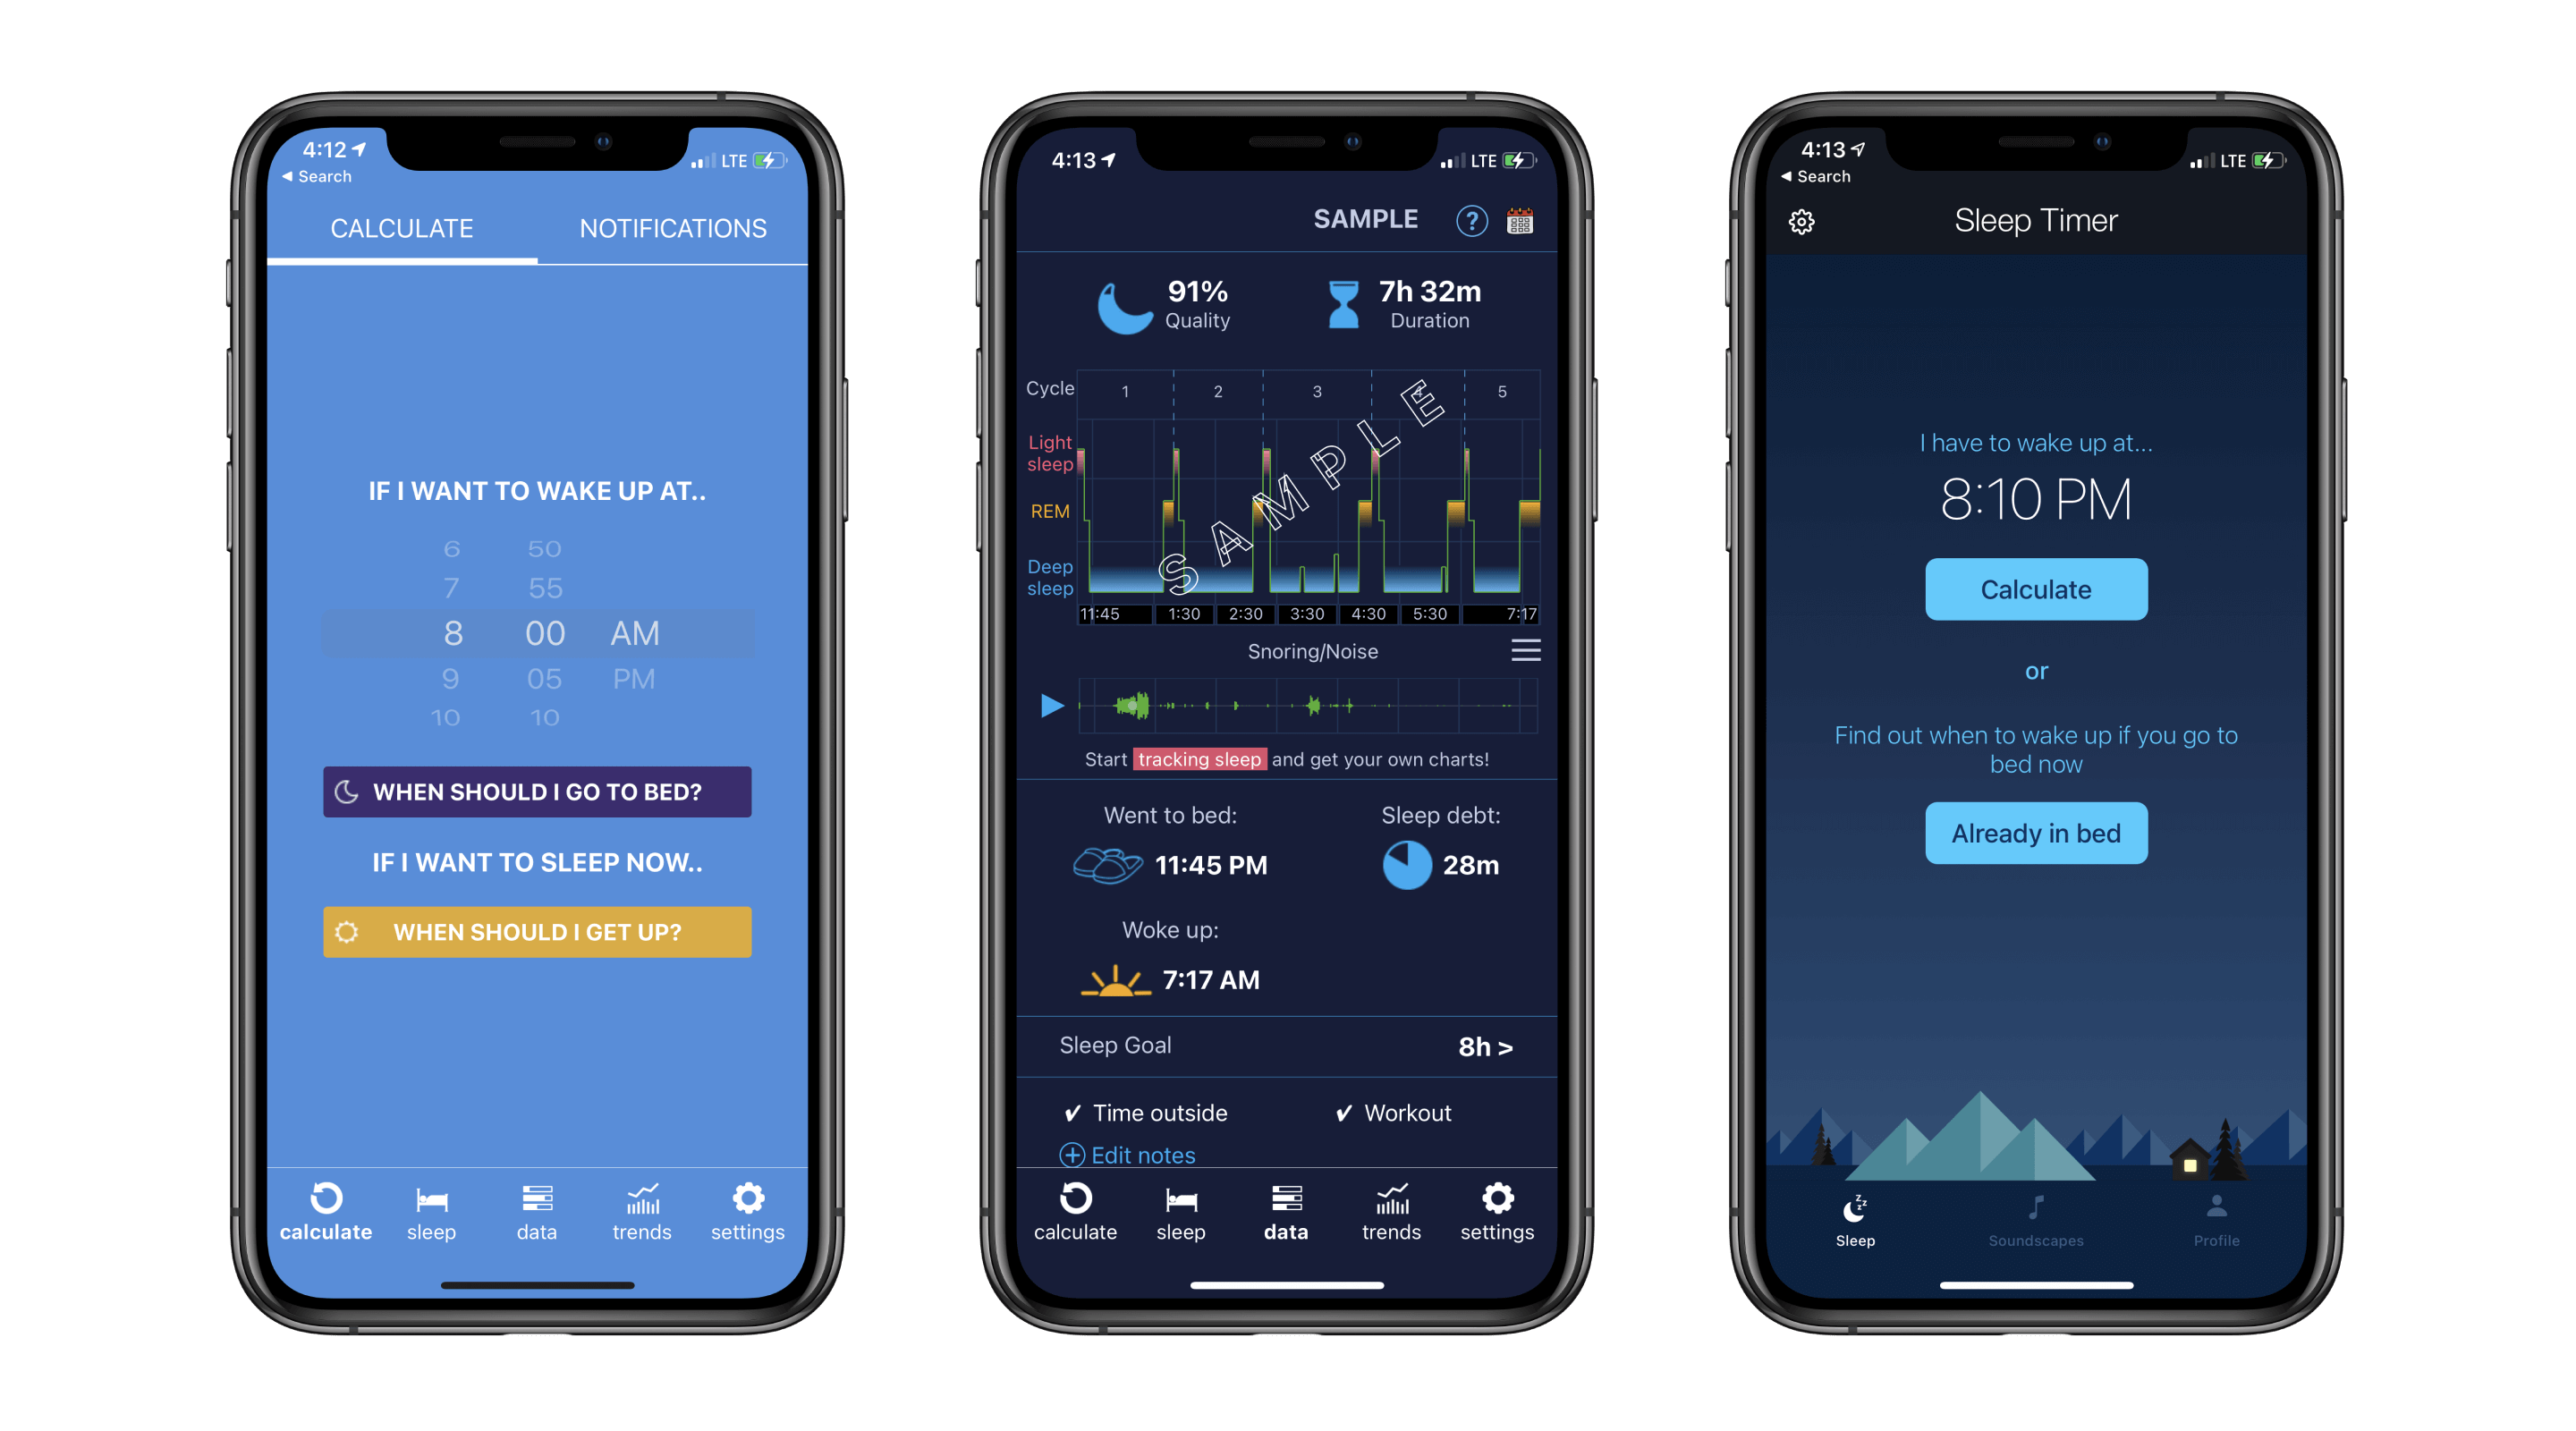 Sleep Calculator Pro (1,2), Sleep Timer (3), app screenshots